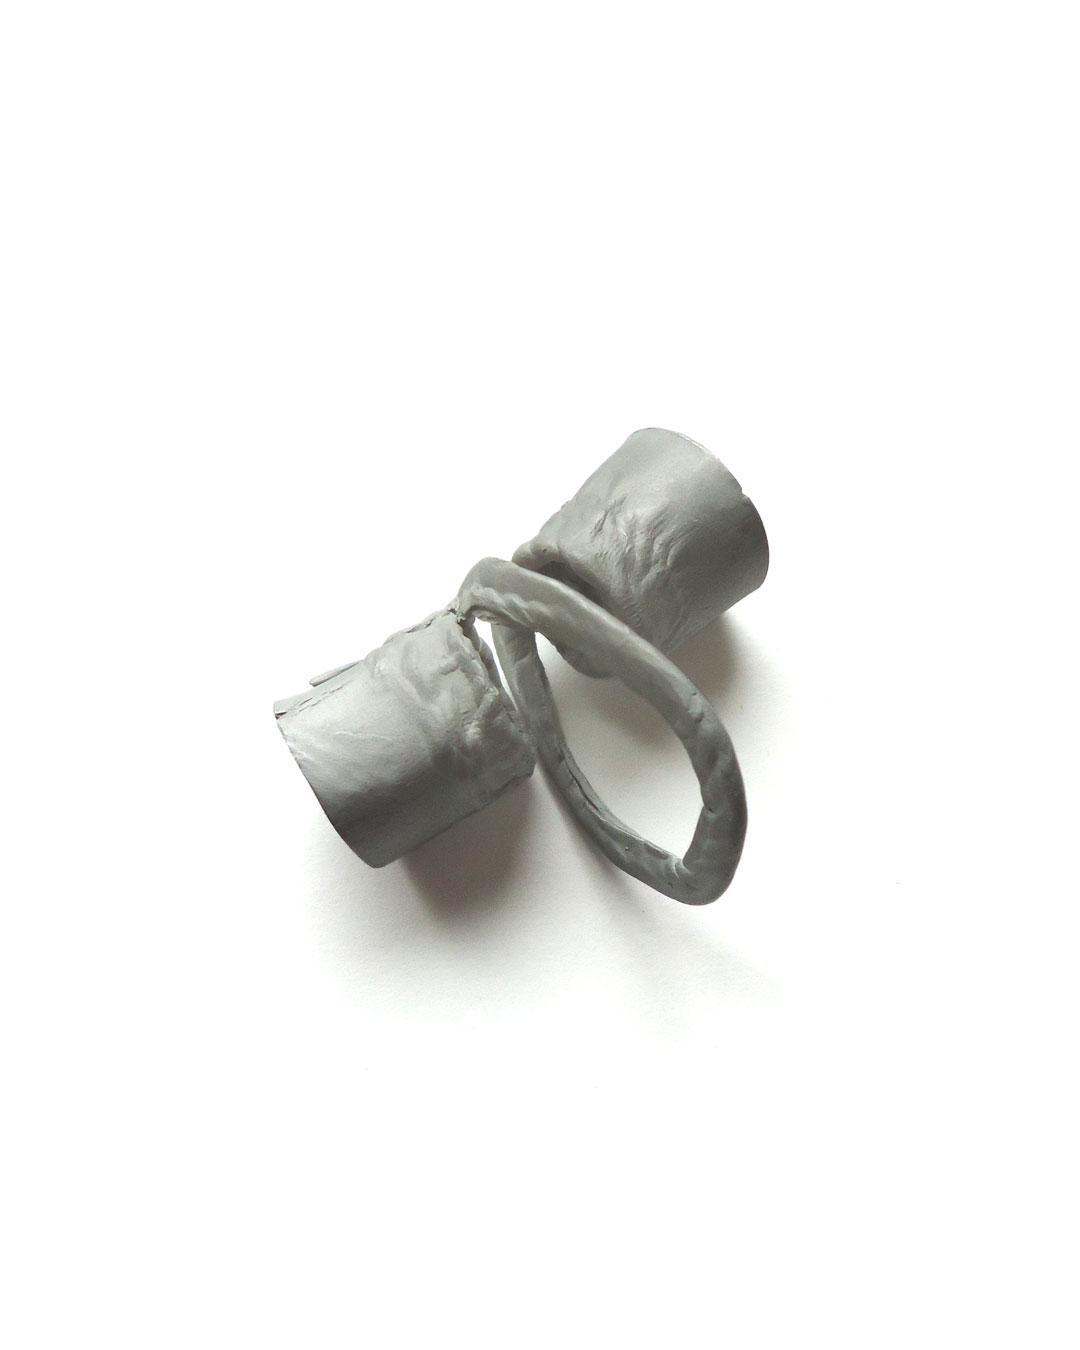 Dana Seachuga, Rebellious-Spring-Ring 4, 2015, ring; aluminium, titanium, 50 x 45 x 20 mm, €395